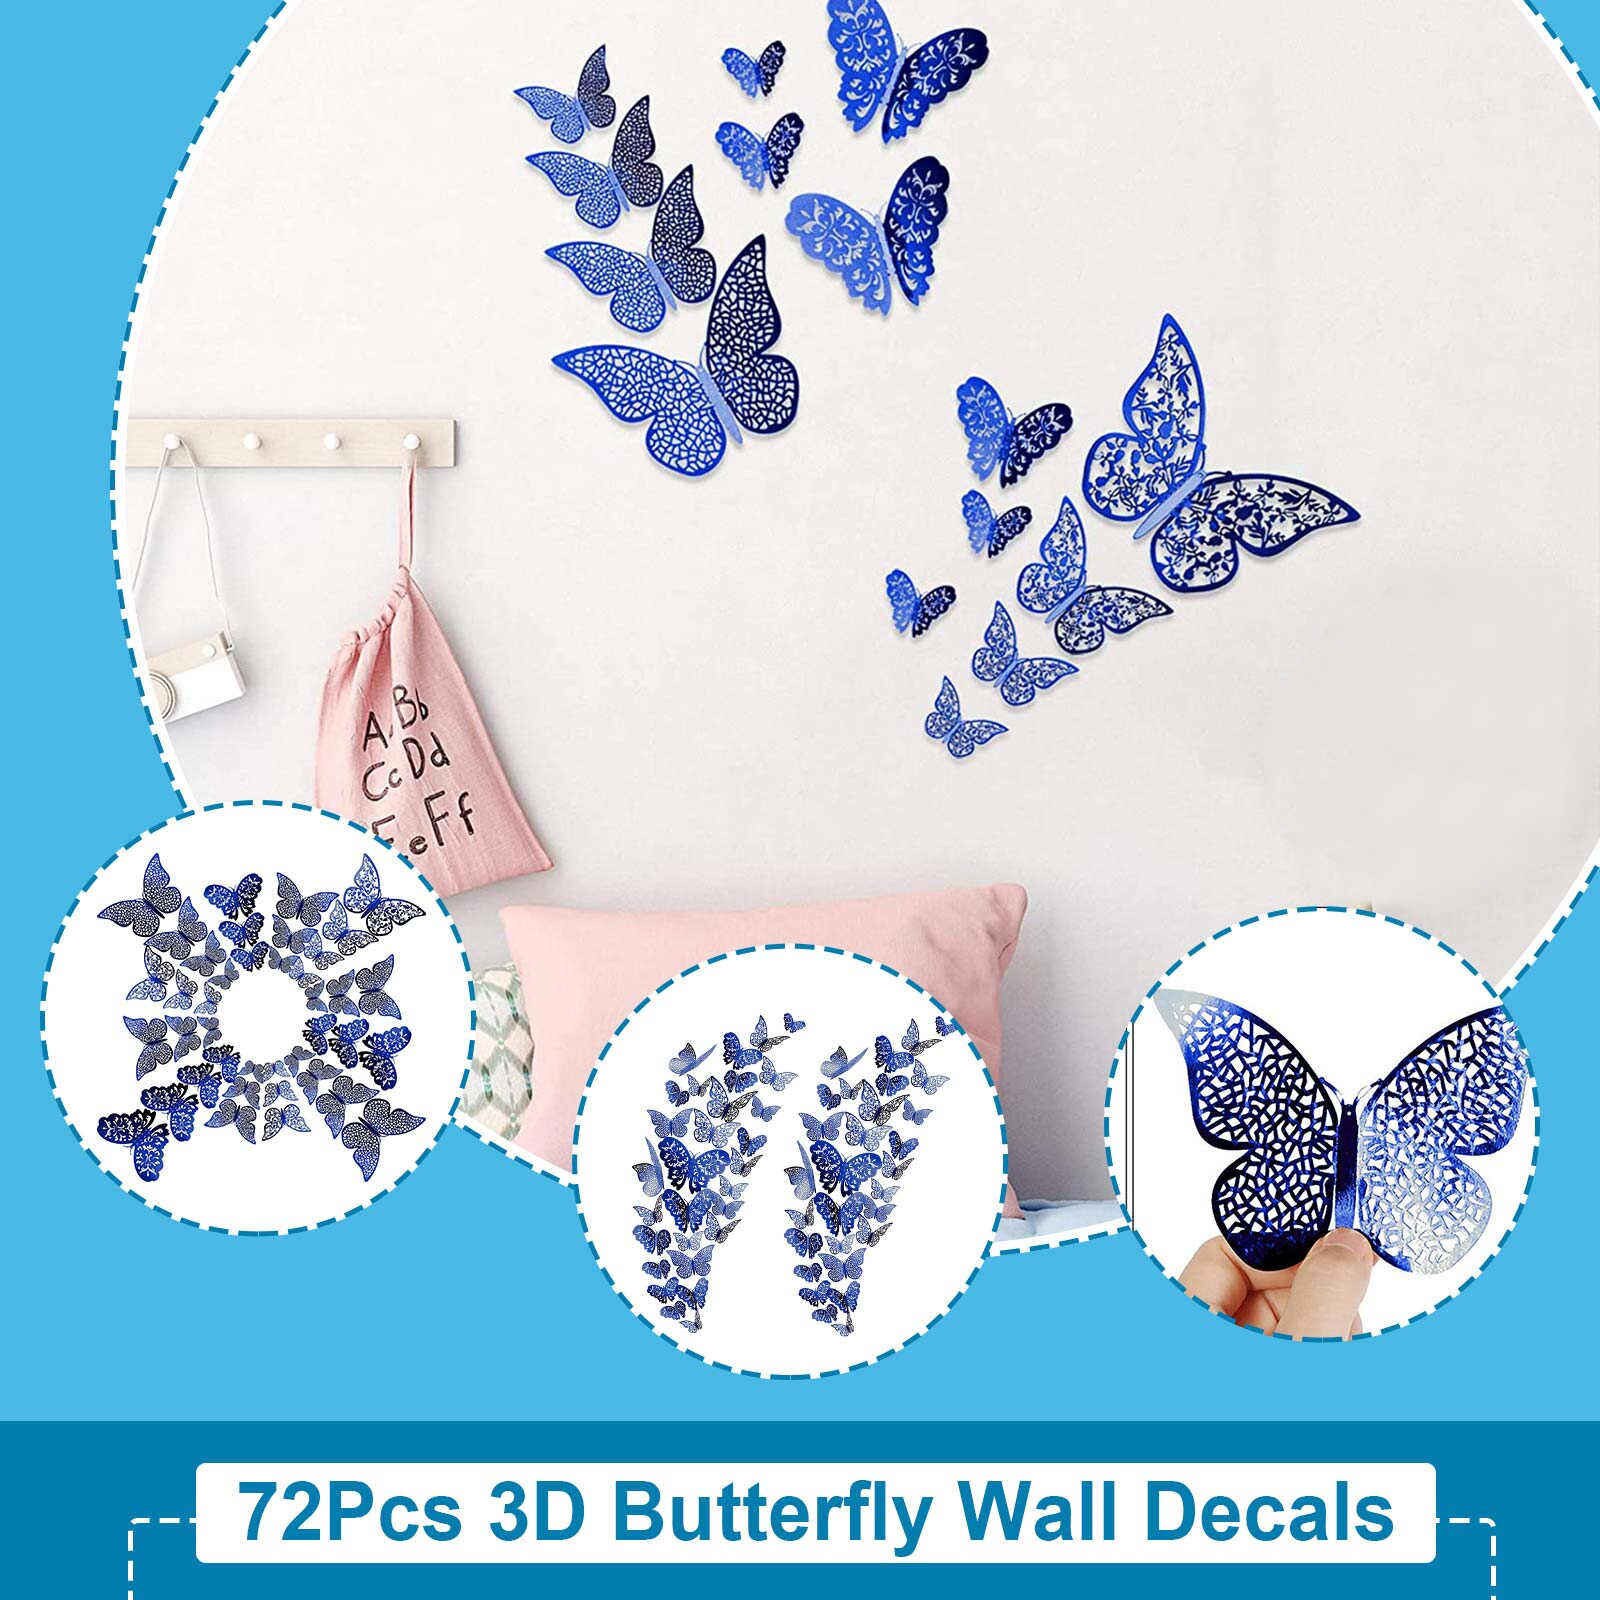 72Pc 3D Vlinder Muurstickers Sticker Art Decoraties Sticker Woonkamer Slaapkamer Decoratie Muurschilderingen Decals Home Decor Sticker